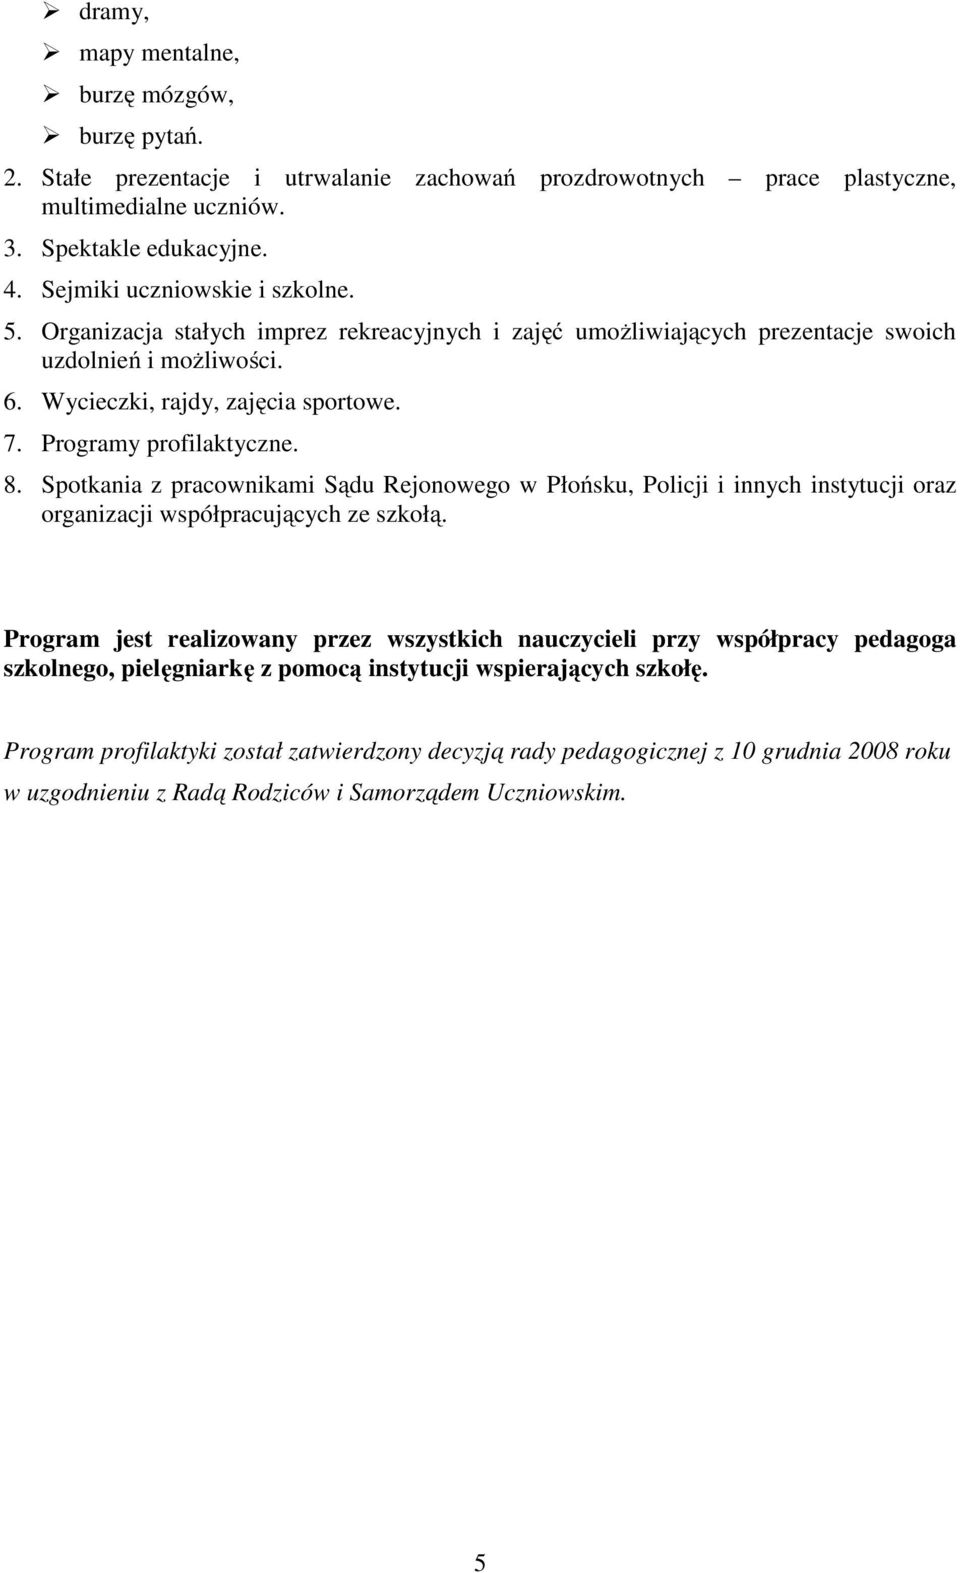 Programy profilaktyczne. 8. Spotkania z pracownikami Sądu Rejonowego w Płońsku, Policji i innych instytucji oraz organizacji współpracujących ze szkołą.